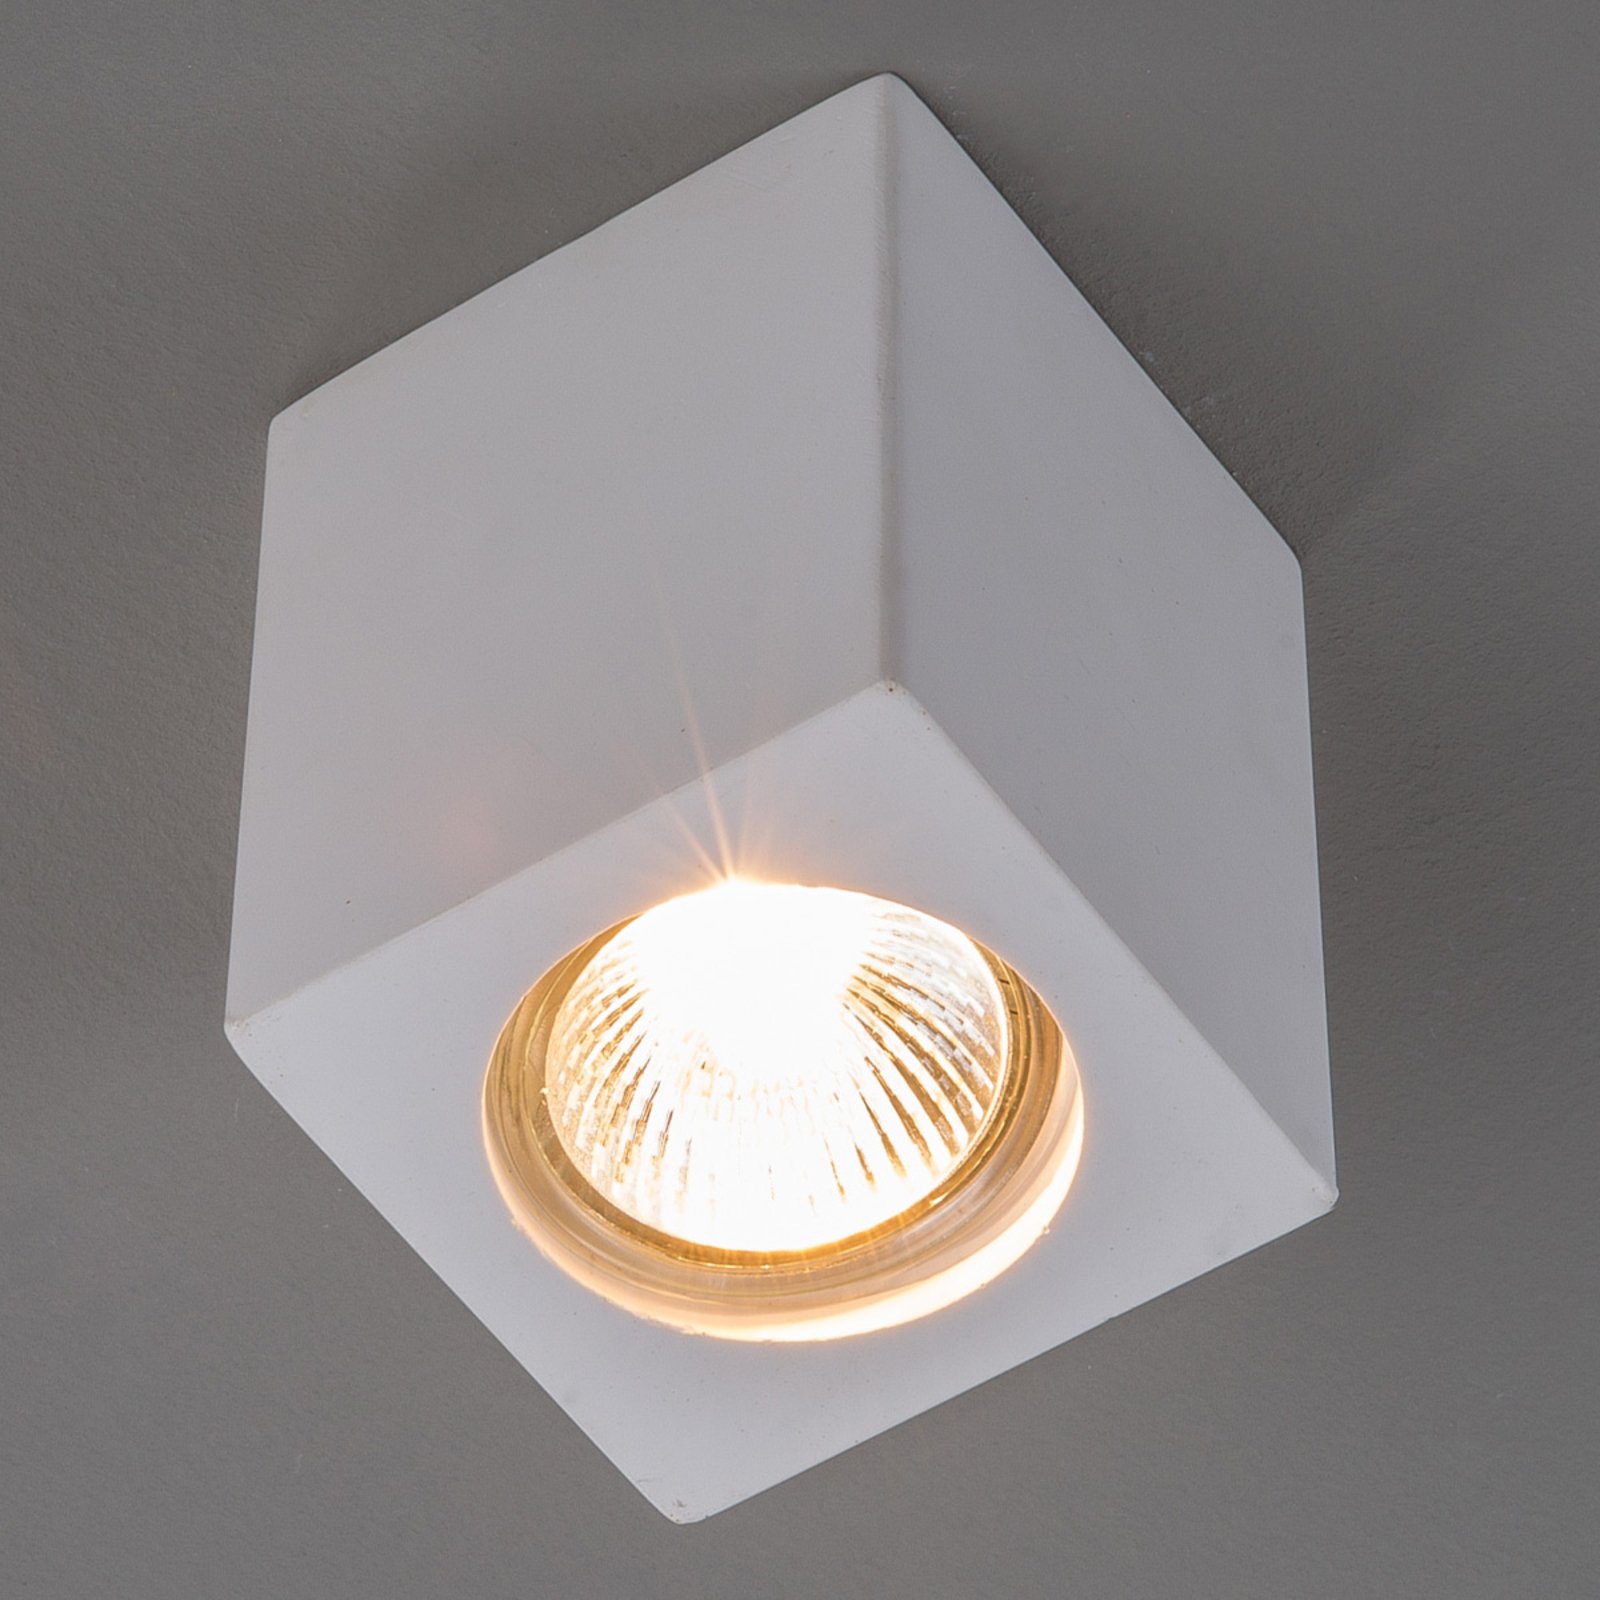 Gips-Downlight Anelie für GU10-Lampe, Höhe 11 cm